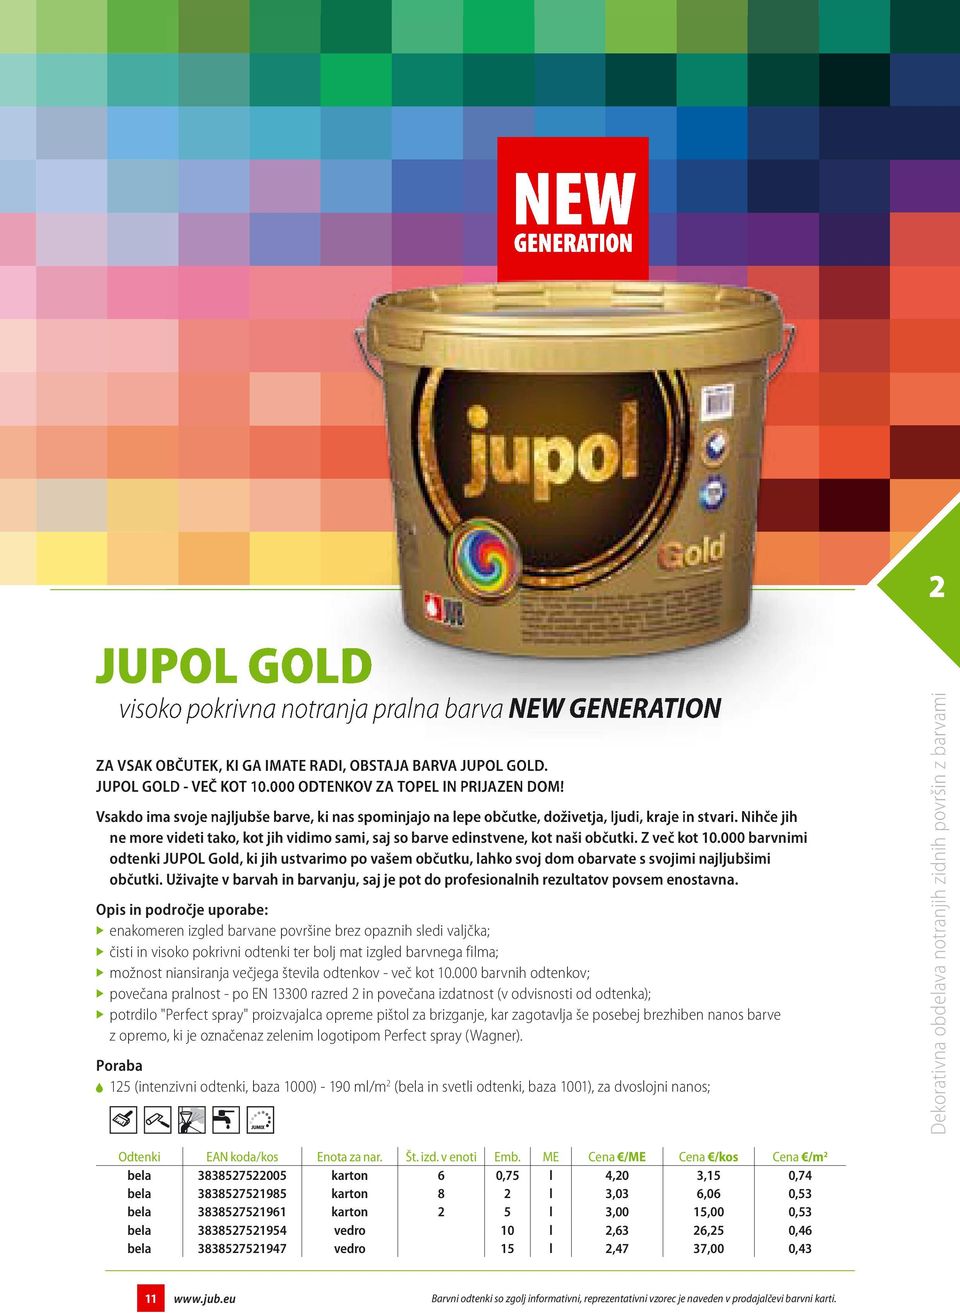 Z več kot 10.000 barvnimi odtenki JUPOL Gold, ki jih ustvarimo po vašem občutku, lahko svoj dom obarvate s svojimi najljubšimi občutki.